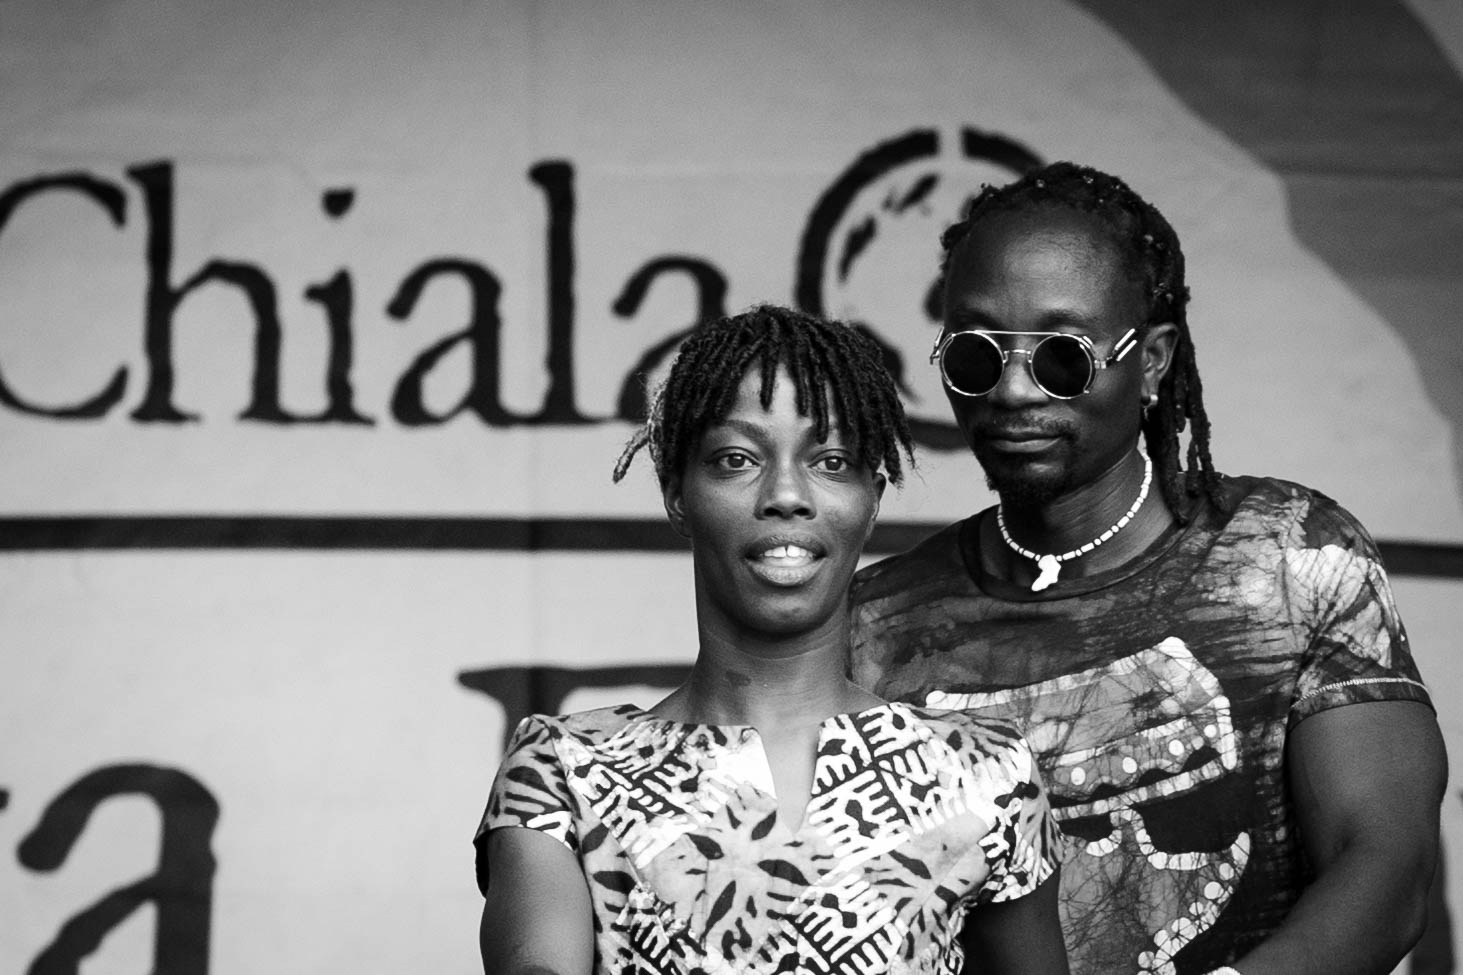 Chiala Afrika Festival 2022 in Graz - AAA 02